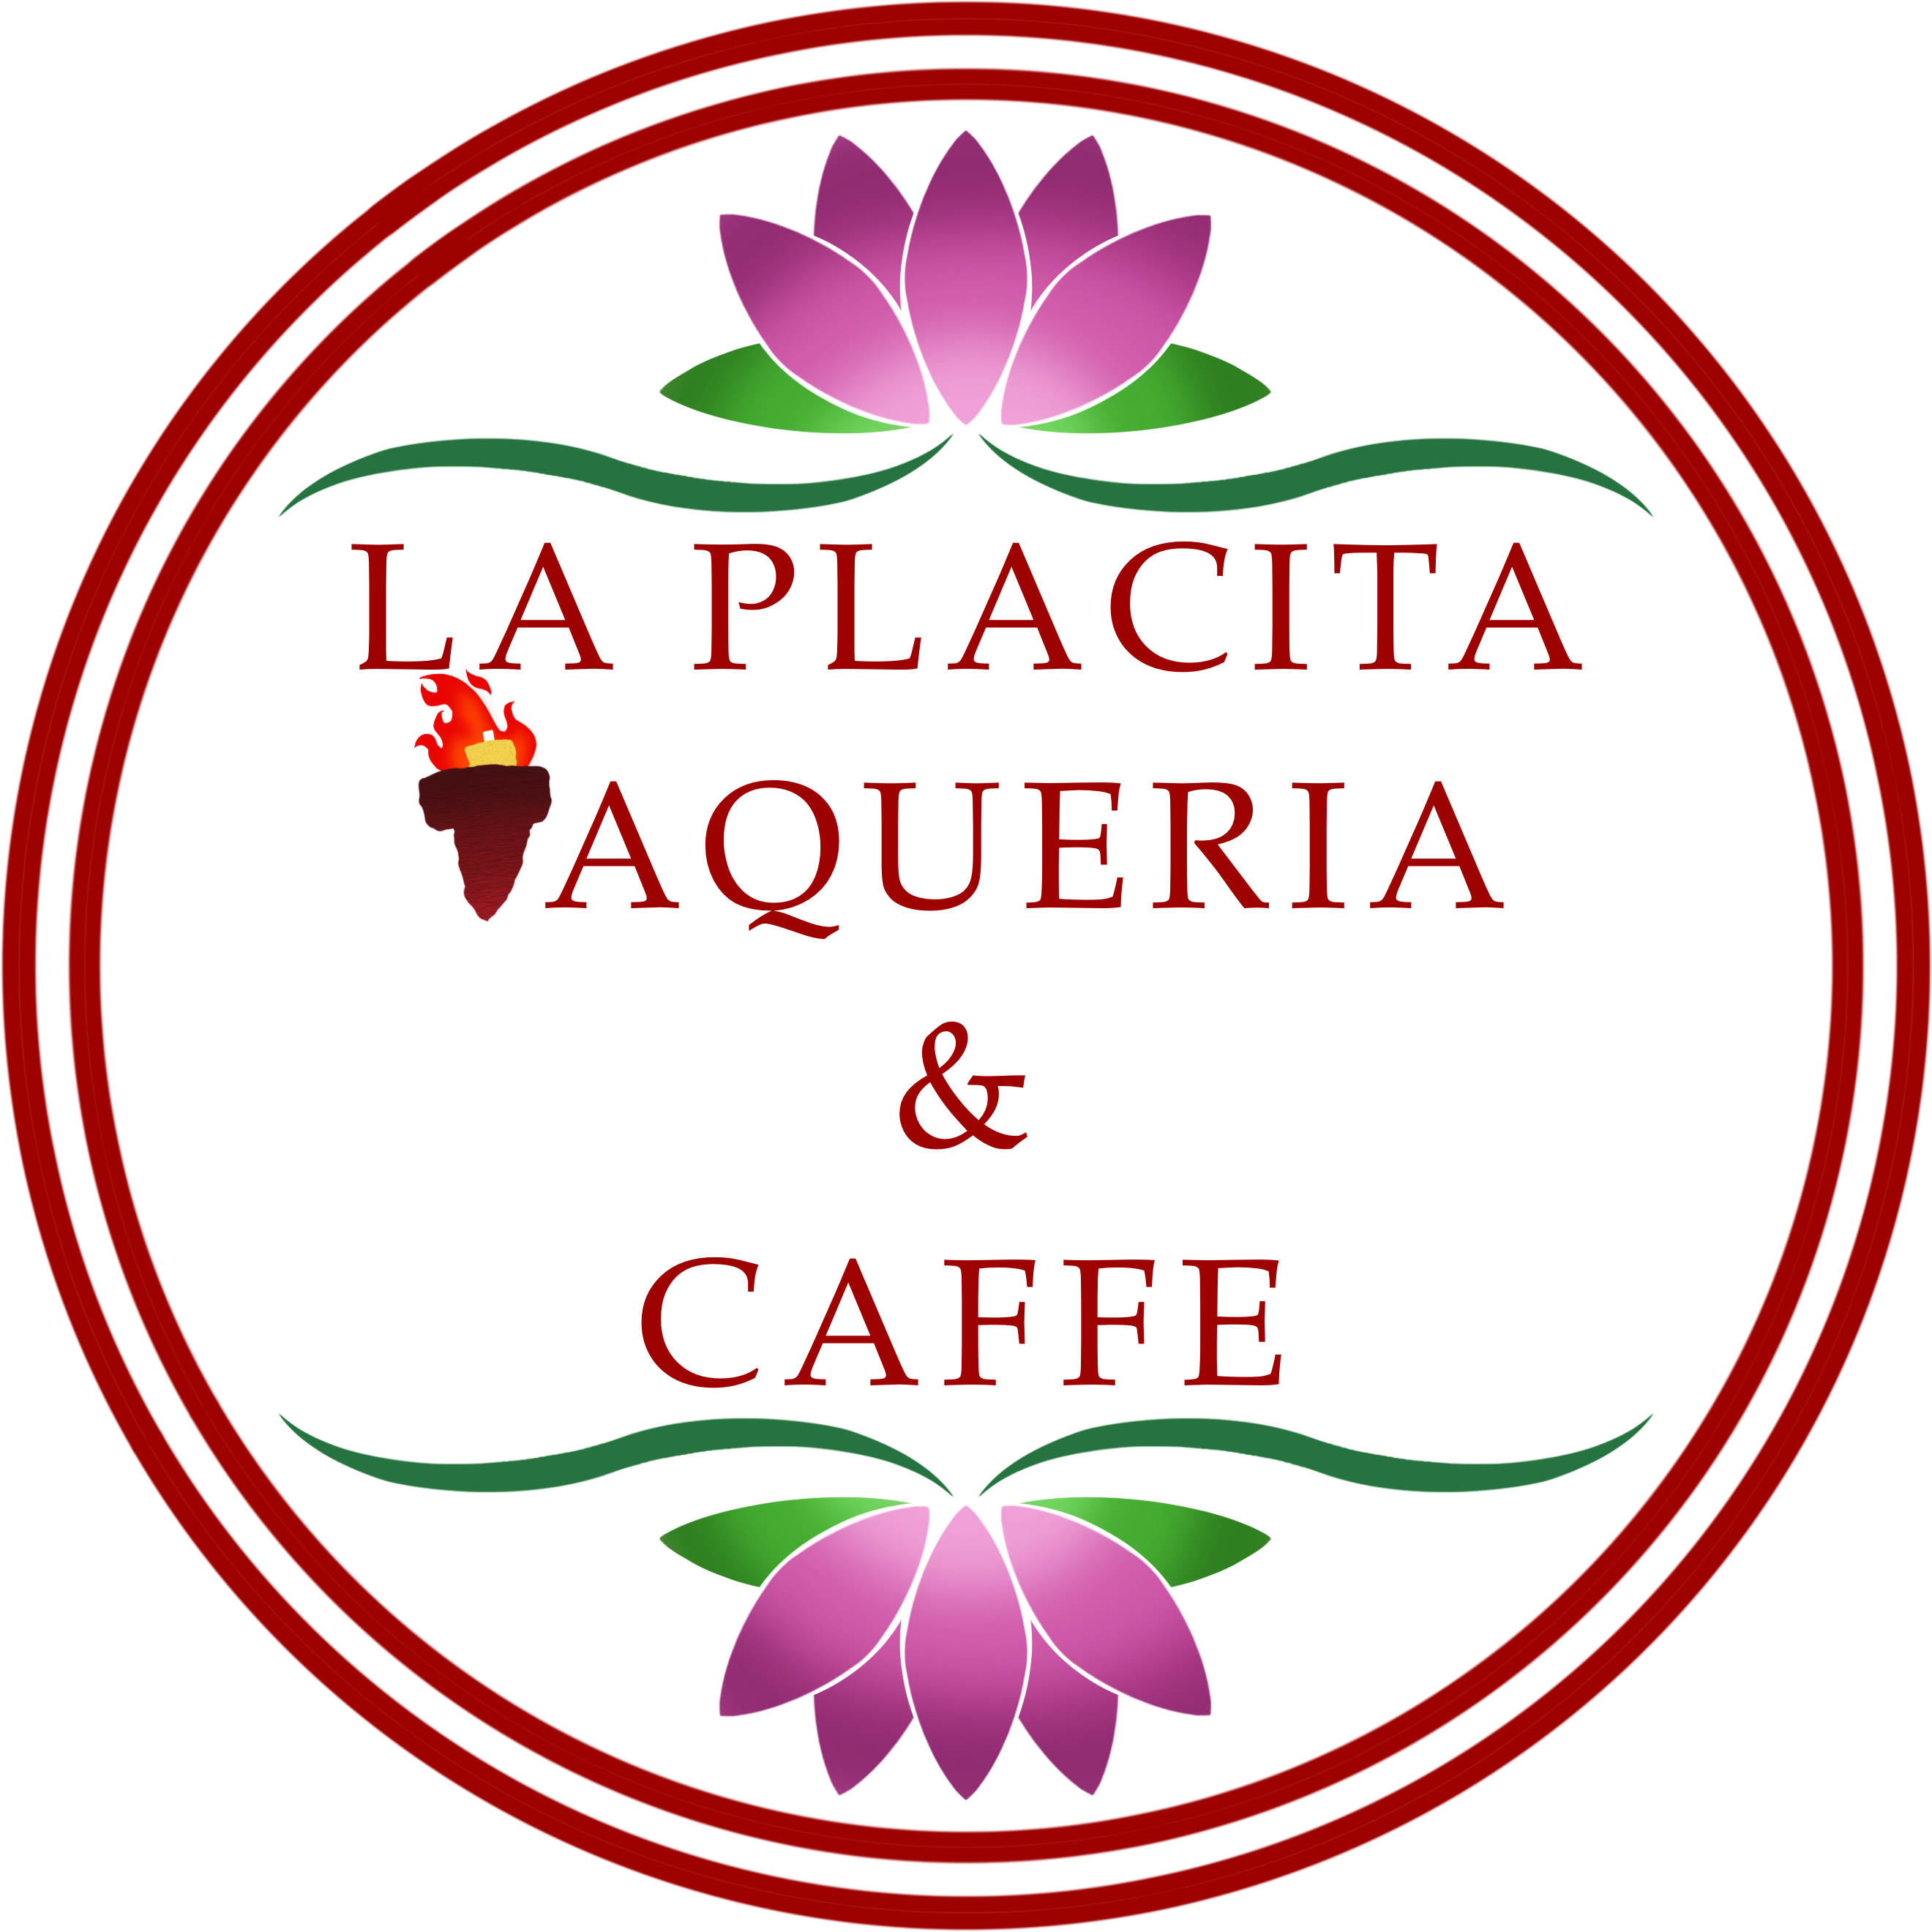 La Placita Taqueria & Caffe 3887 Broadway